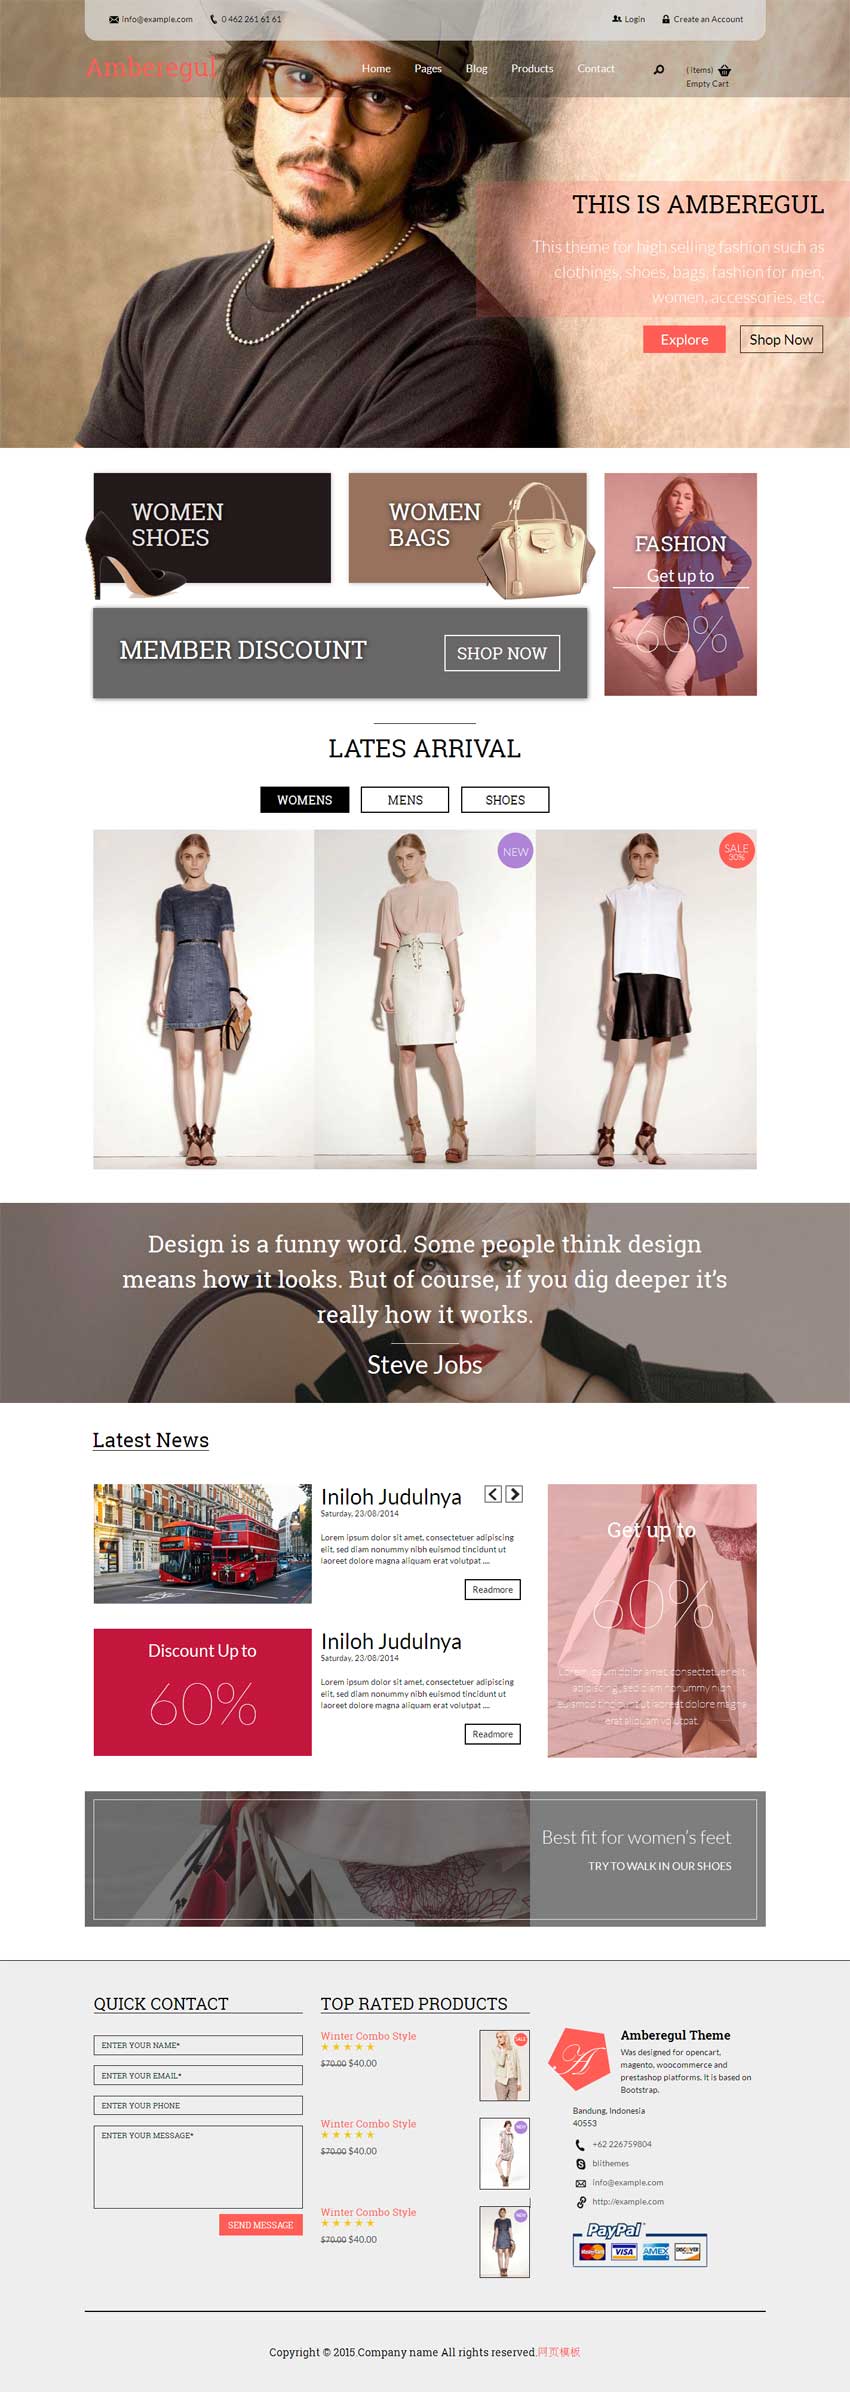 国外简洁的时尚服装购物商城模板html下载_商城网站模板插图源码资源库